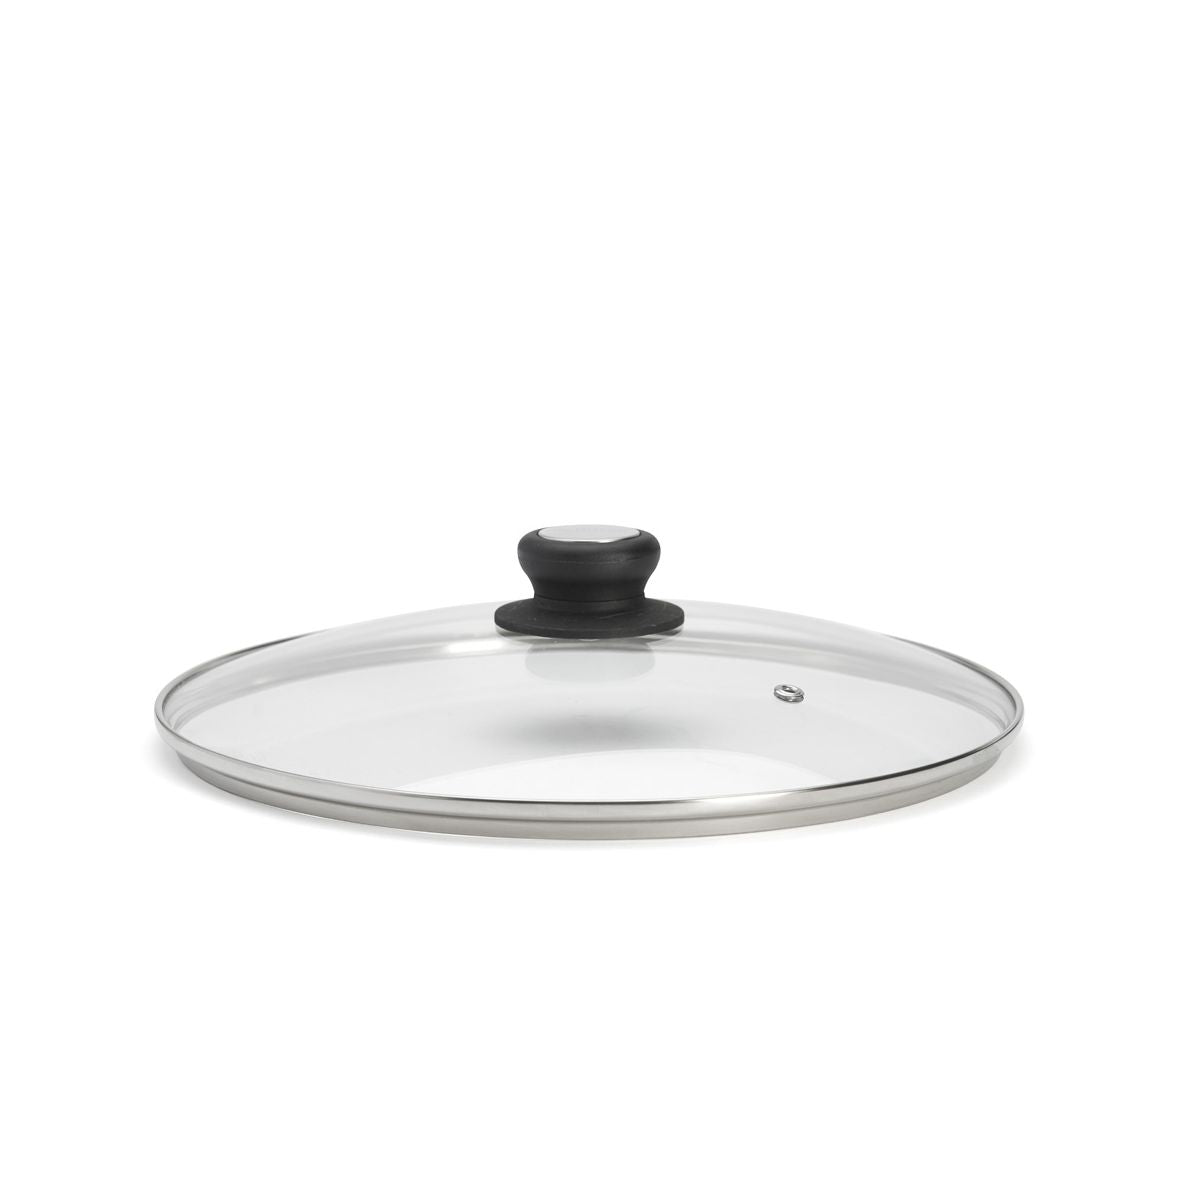 De Buyer glass lid with bakelite knob